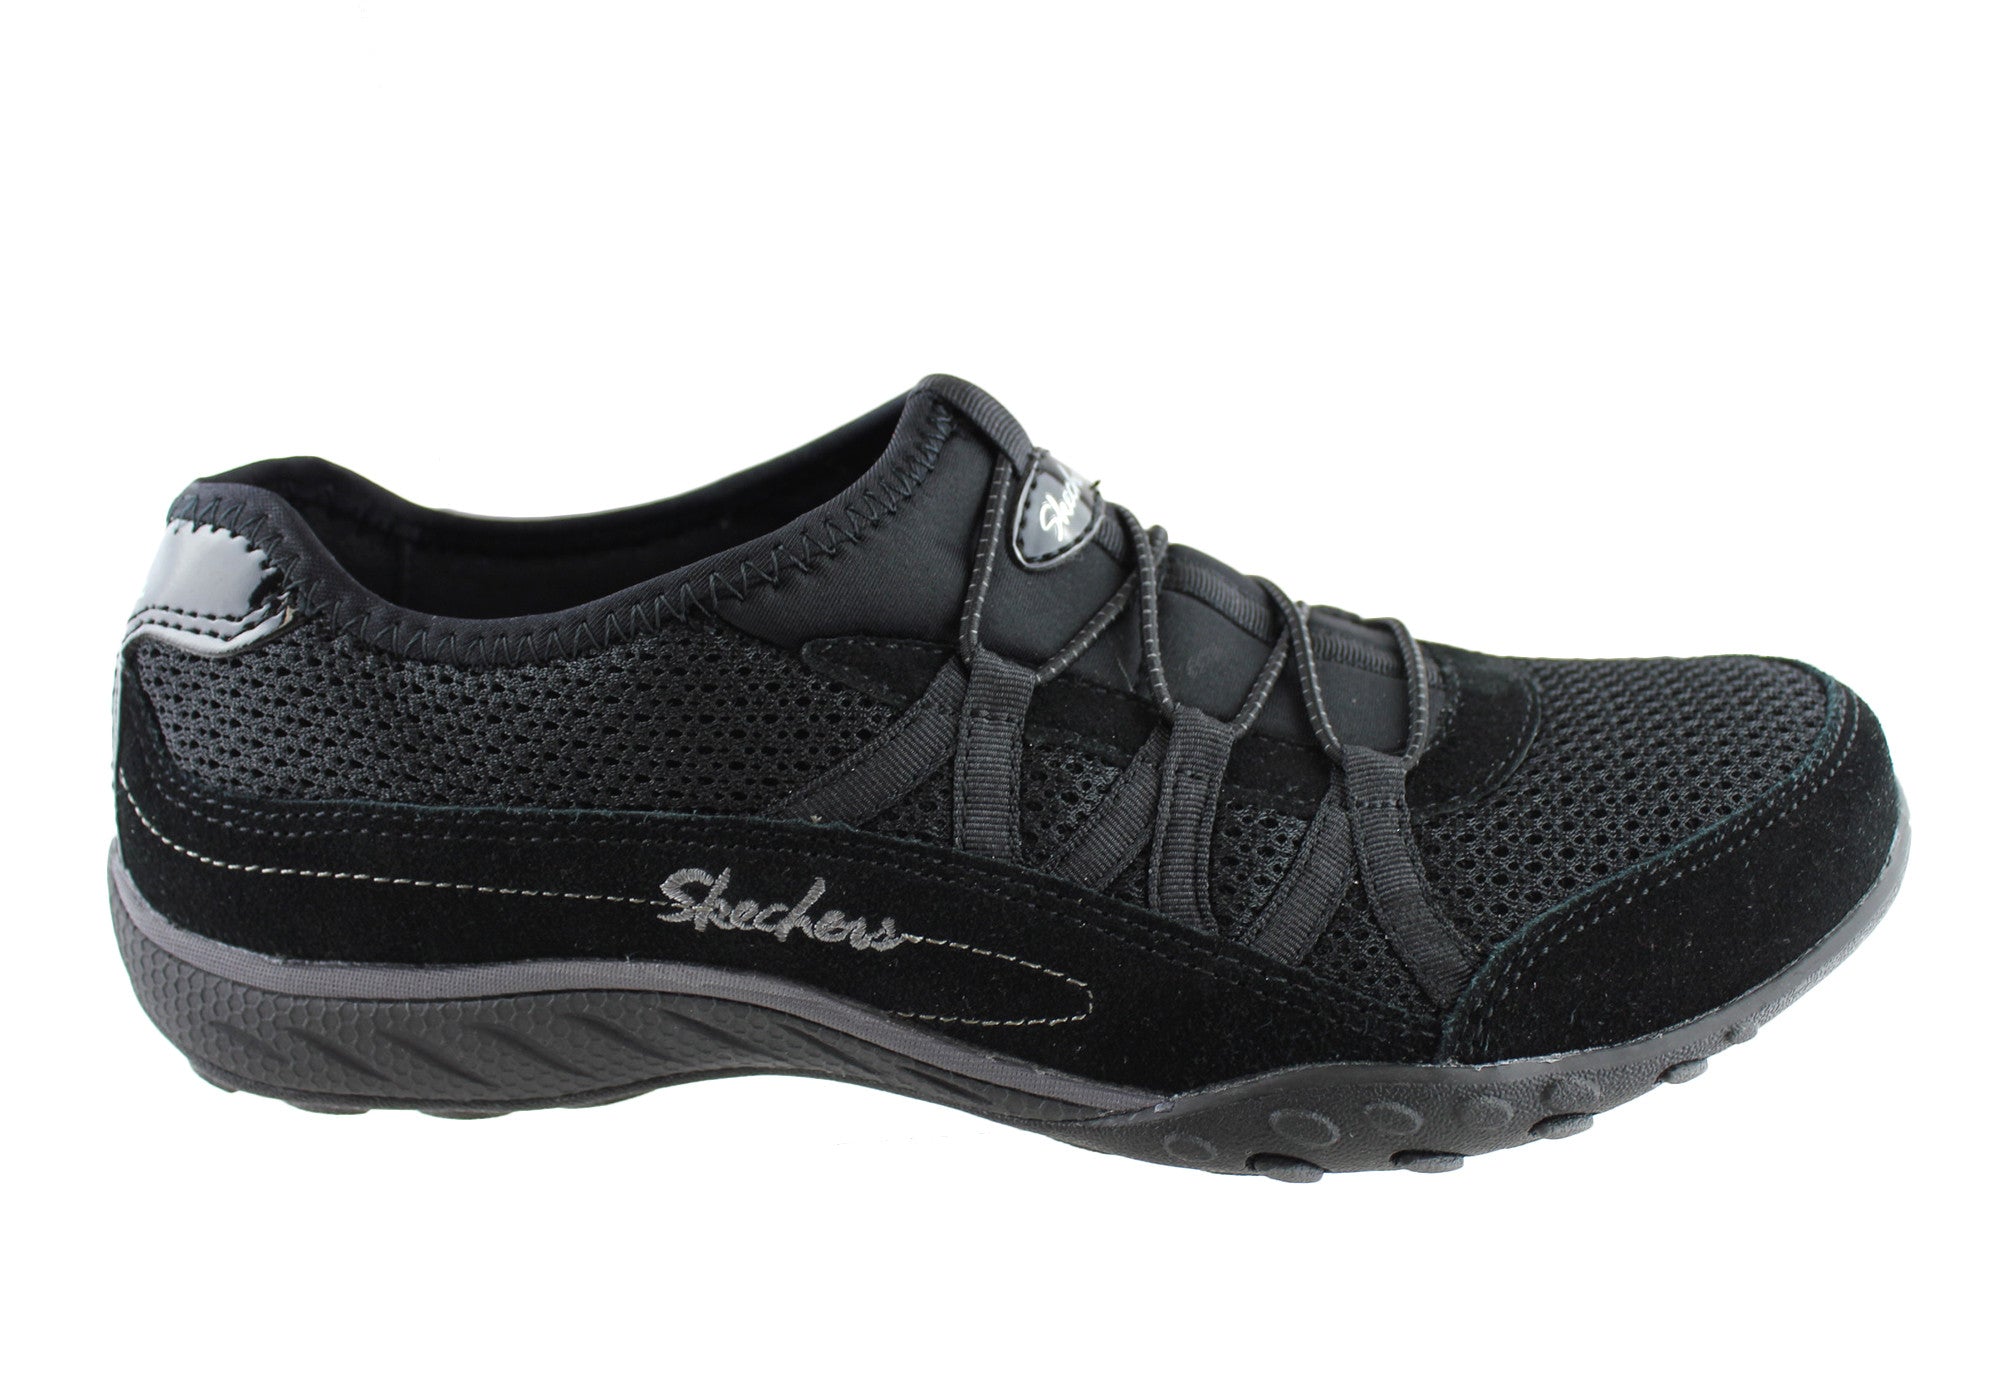 memory foam skechers womens shoes